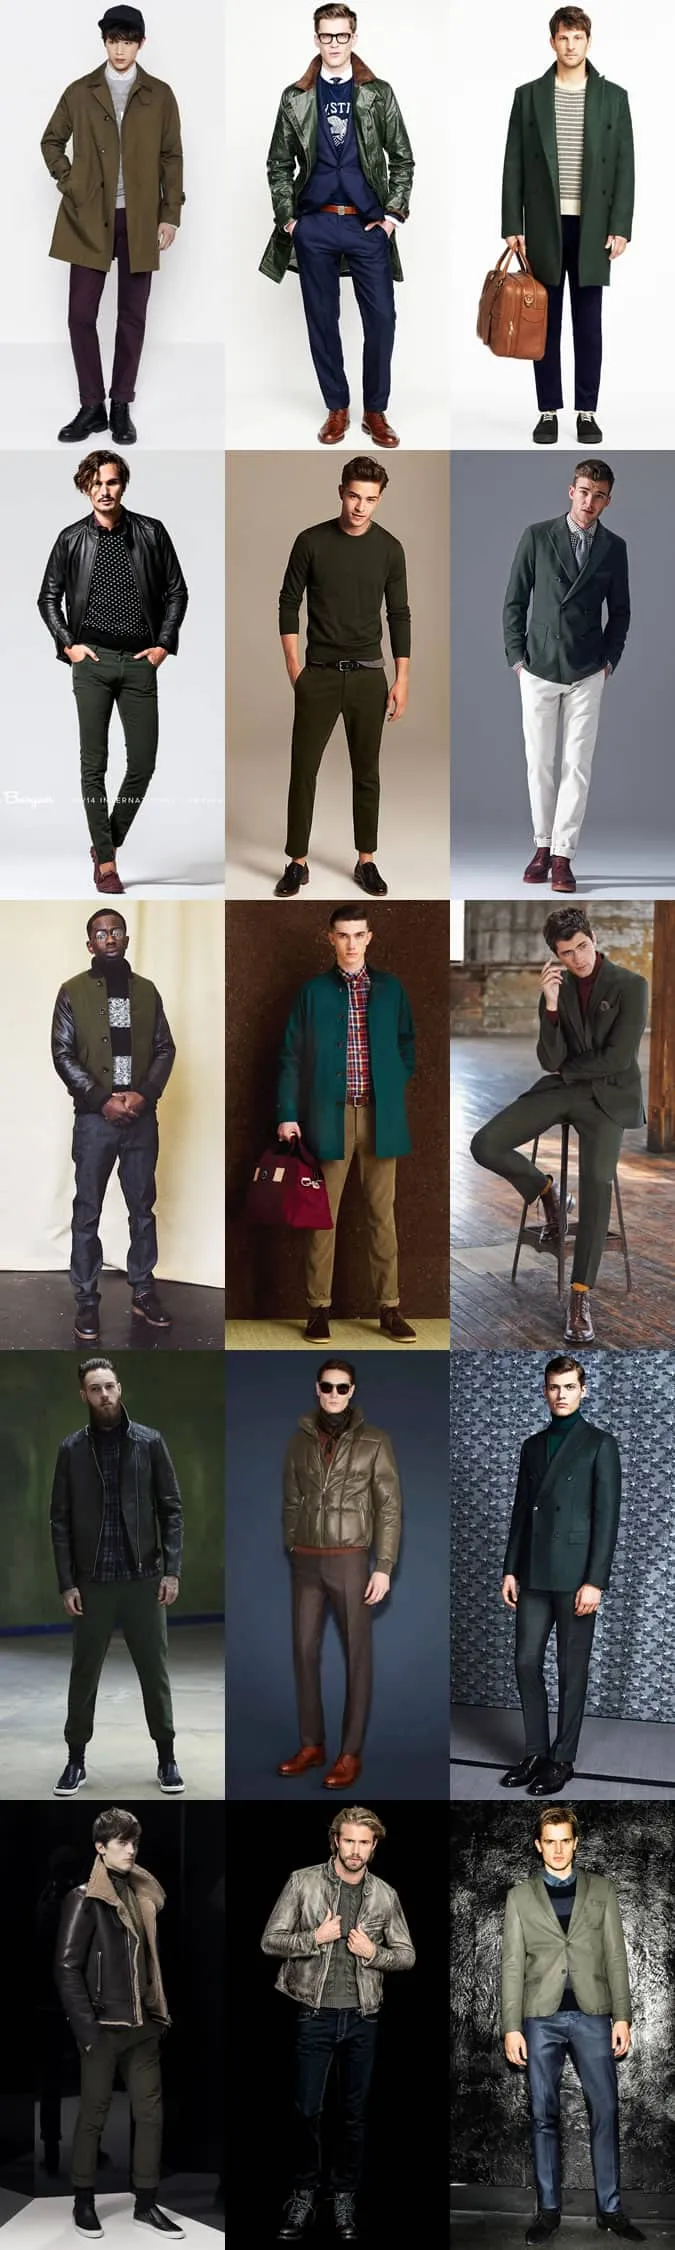 Quần áo, áo khoác ngoài, đồ may đo và phụ kiện màu xanh lá cây của nam giới - lookbook lấy cảm hứng từ trang phục